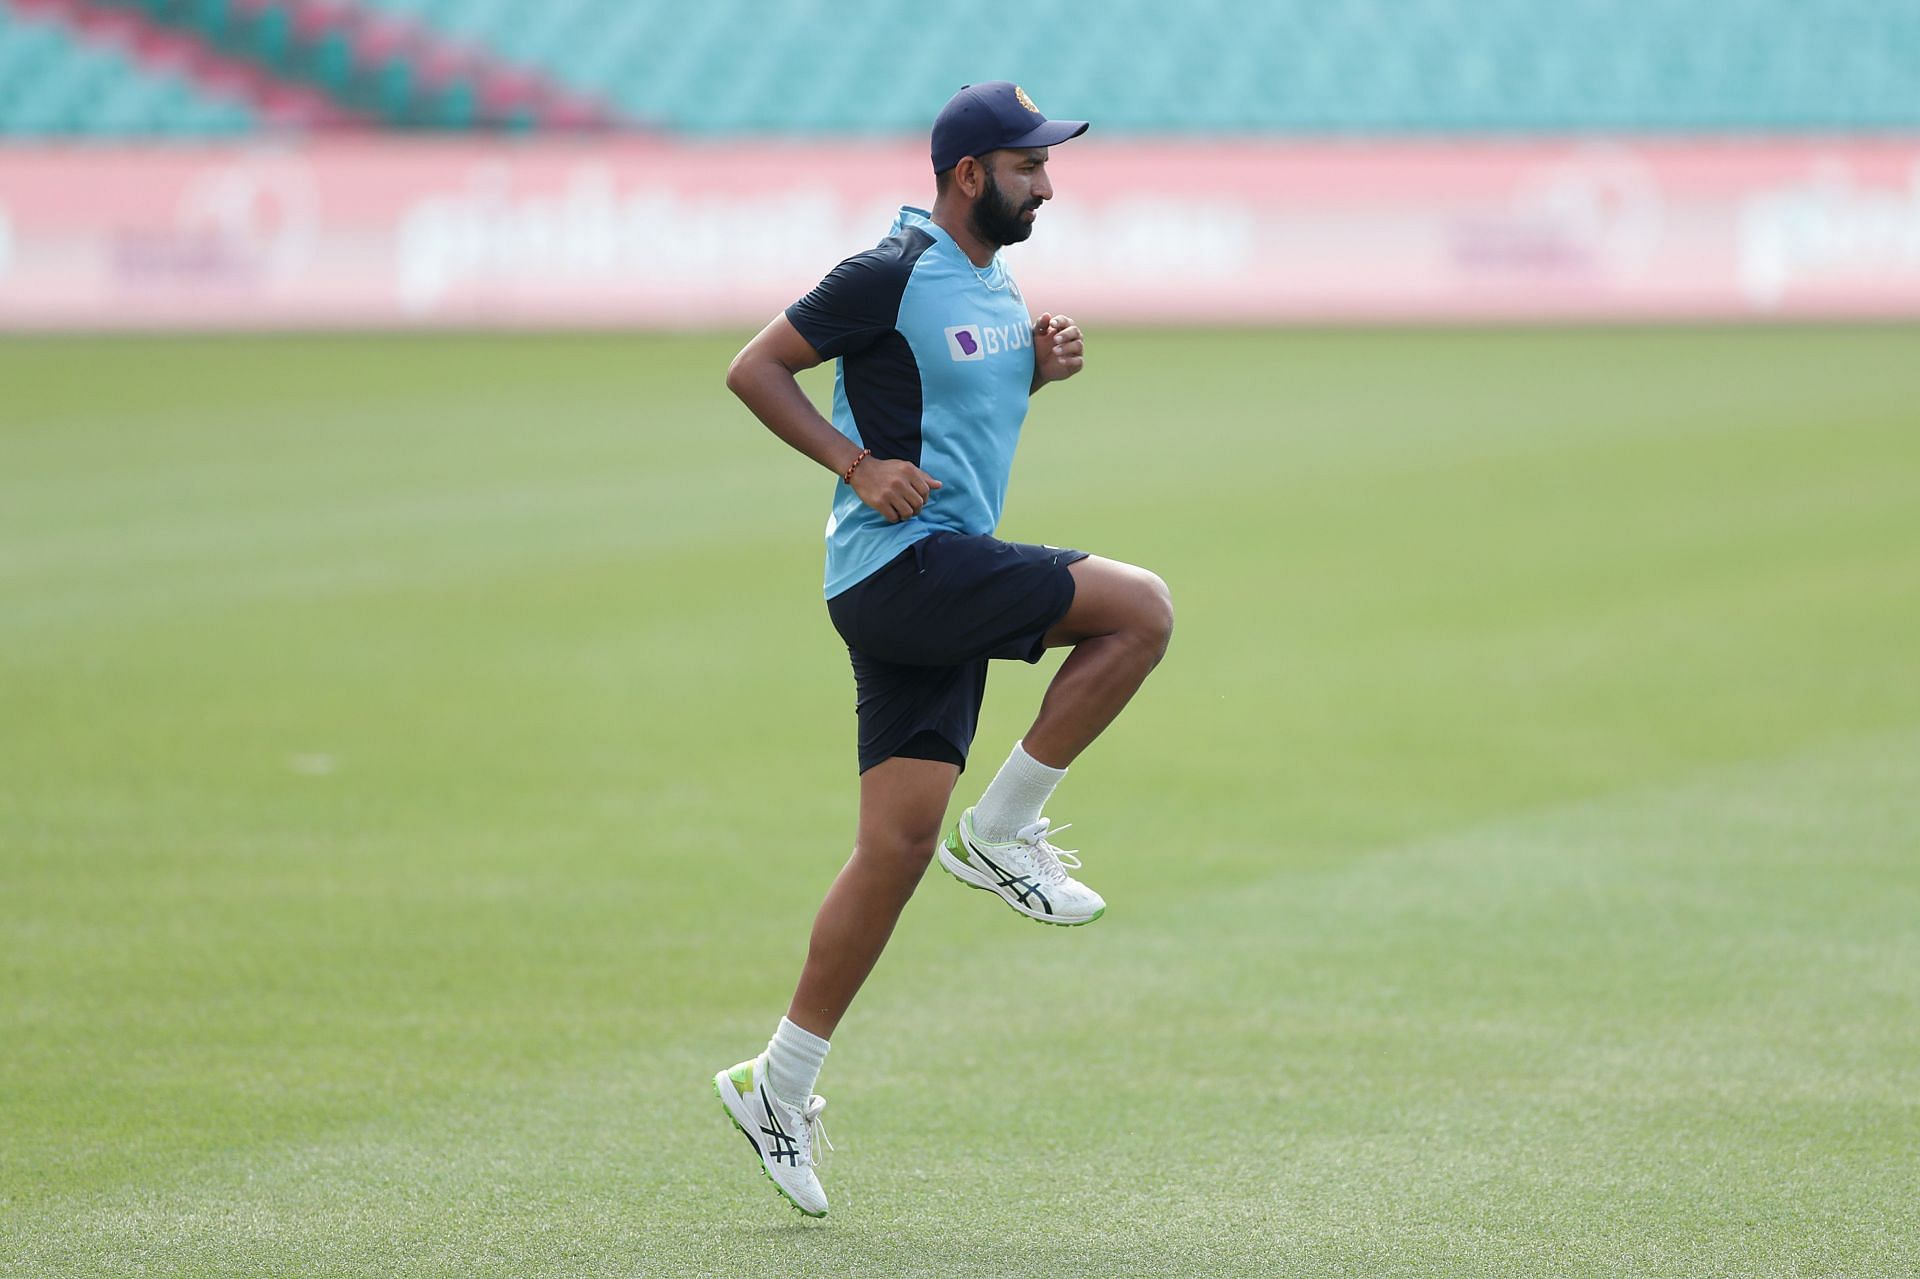 भारत और न्यूज़ीलैंड के बीच दो टेस्ट मैचों की सीरीज खेली जाएगी